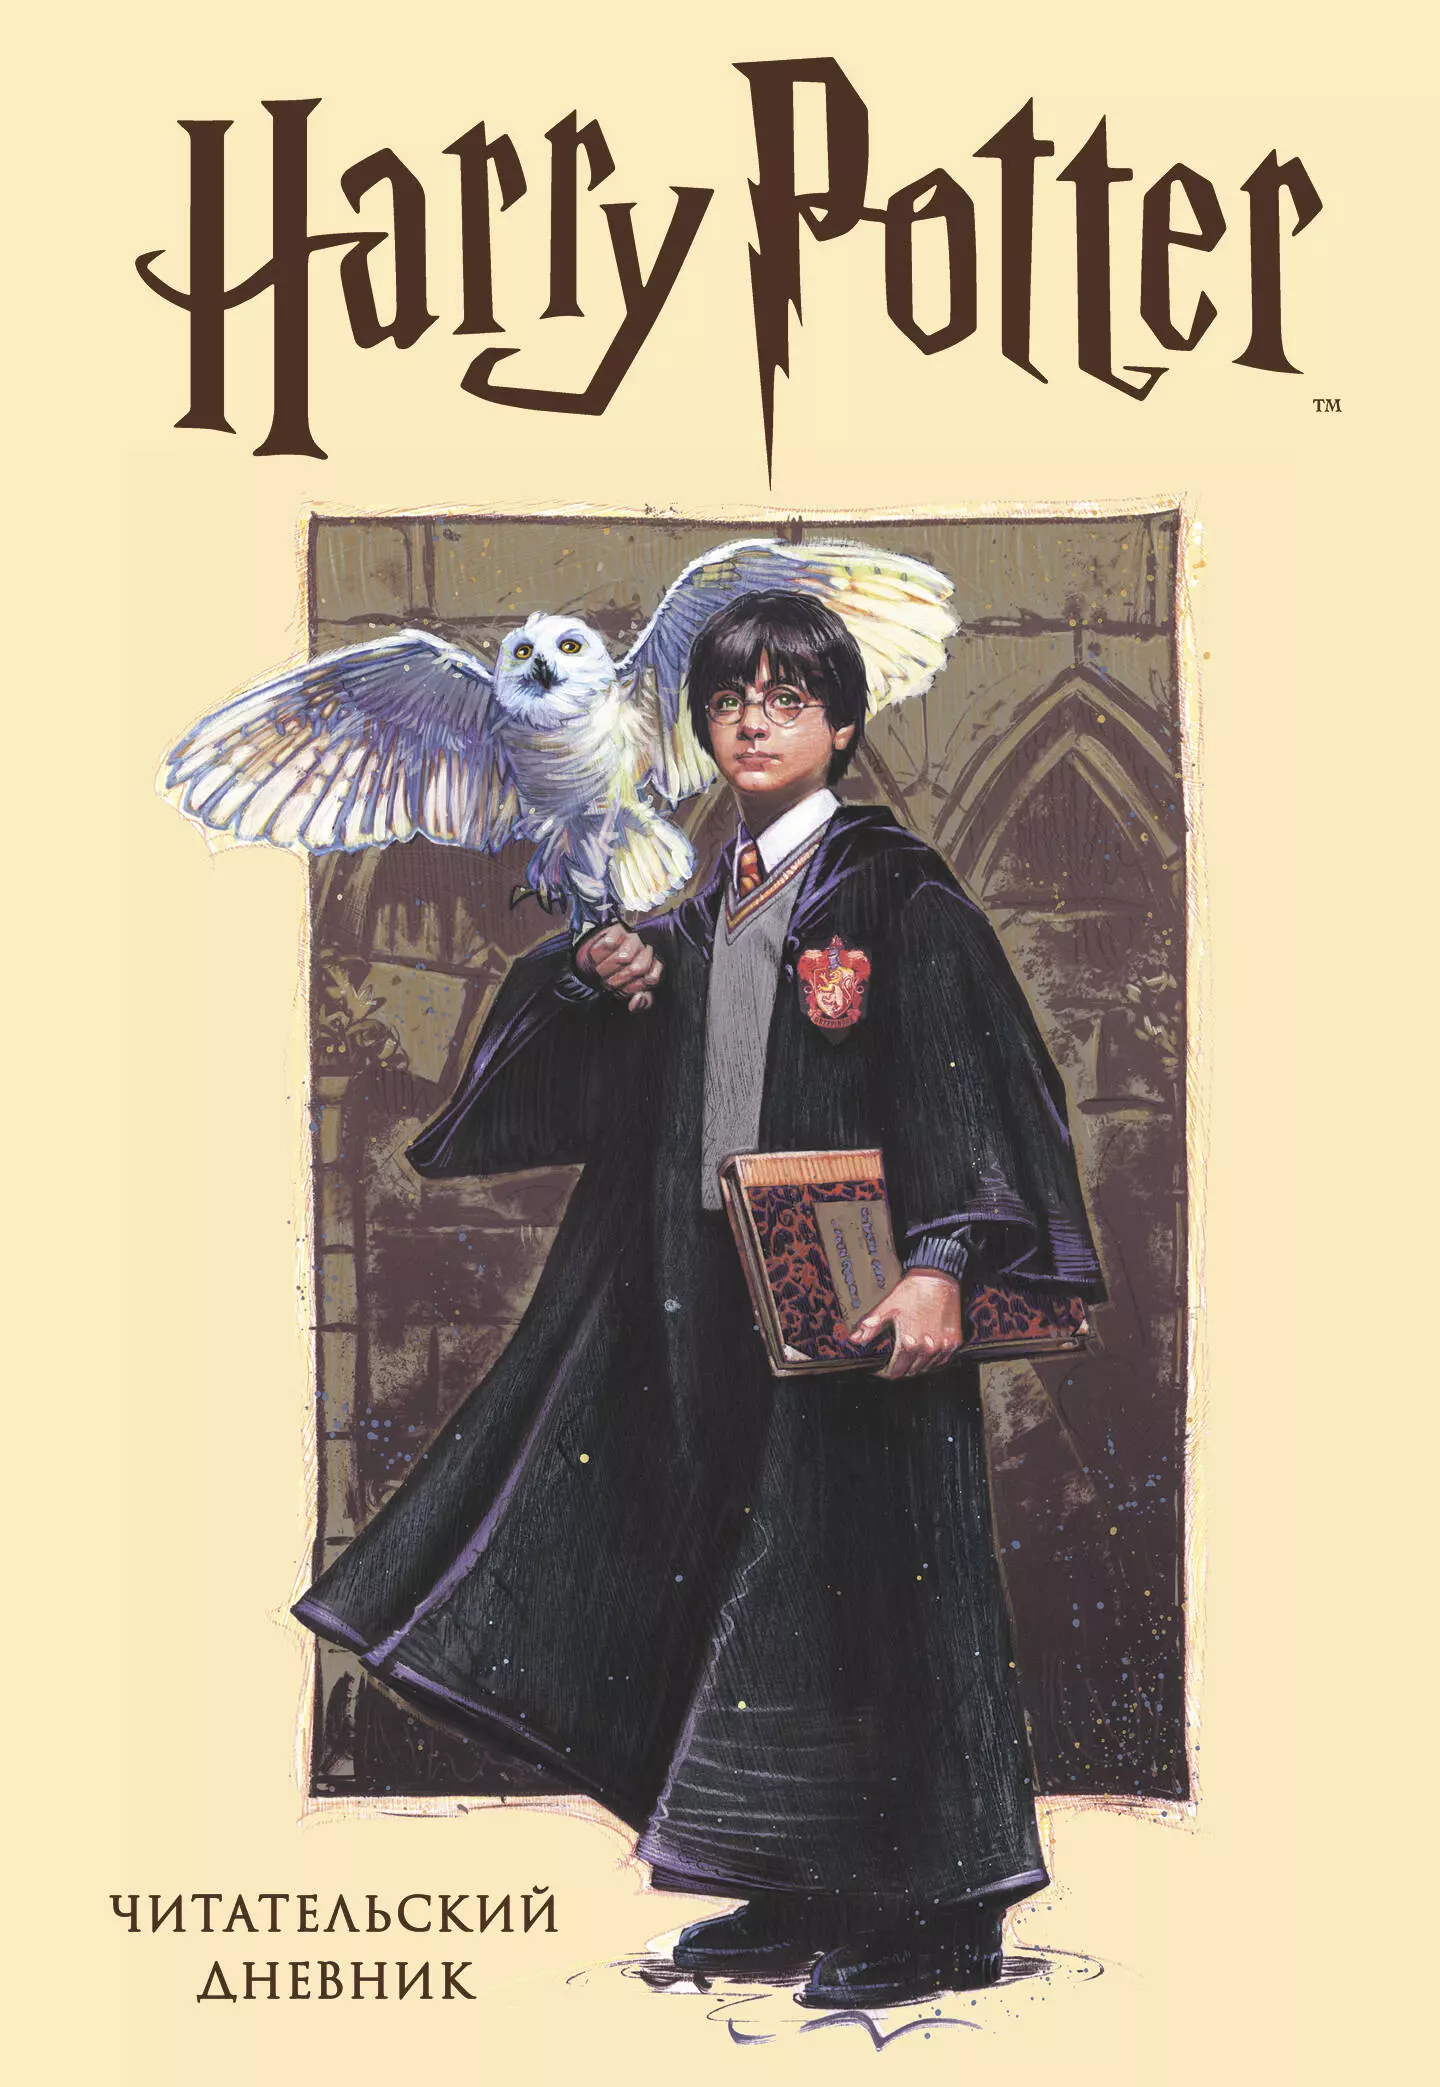 Читательский дневник. Гарри Поттер (32 л., твердый переплет, с наклейками) расческа пуффендуй из истории гарри поттера